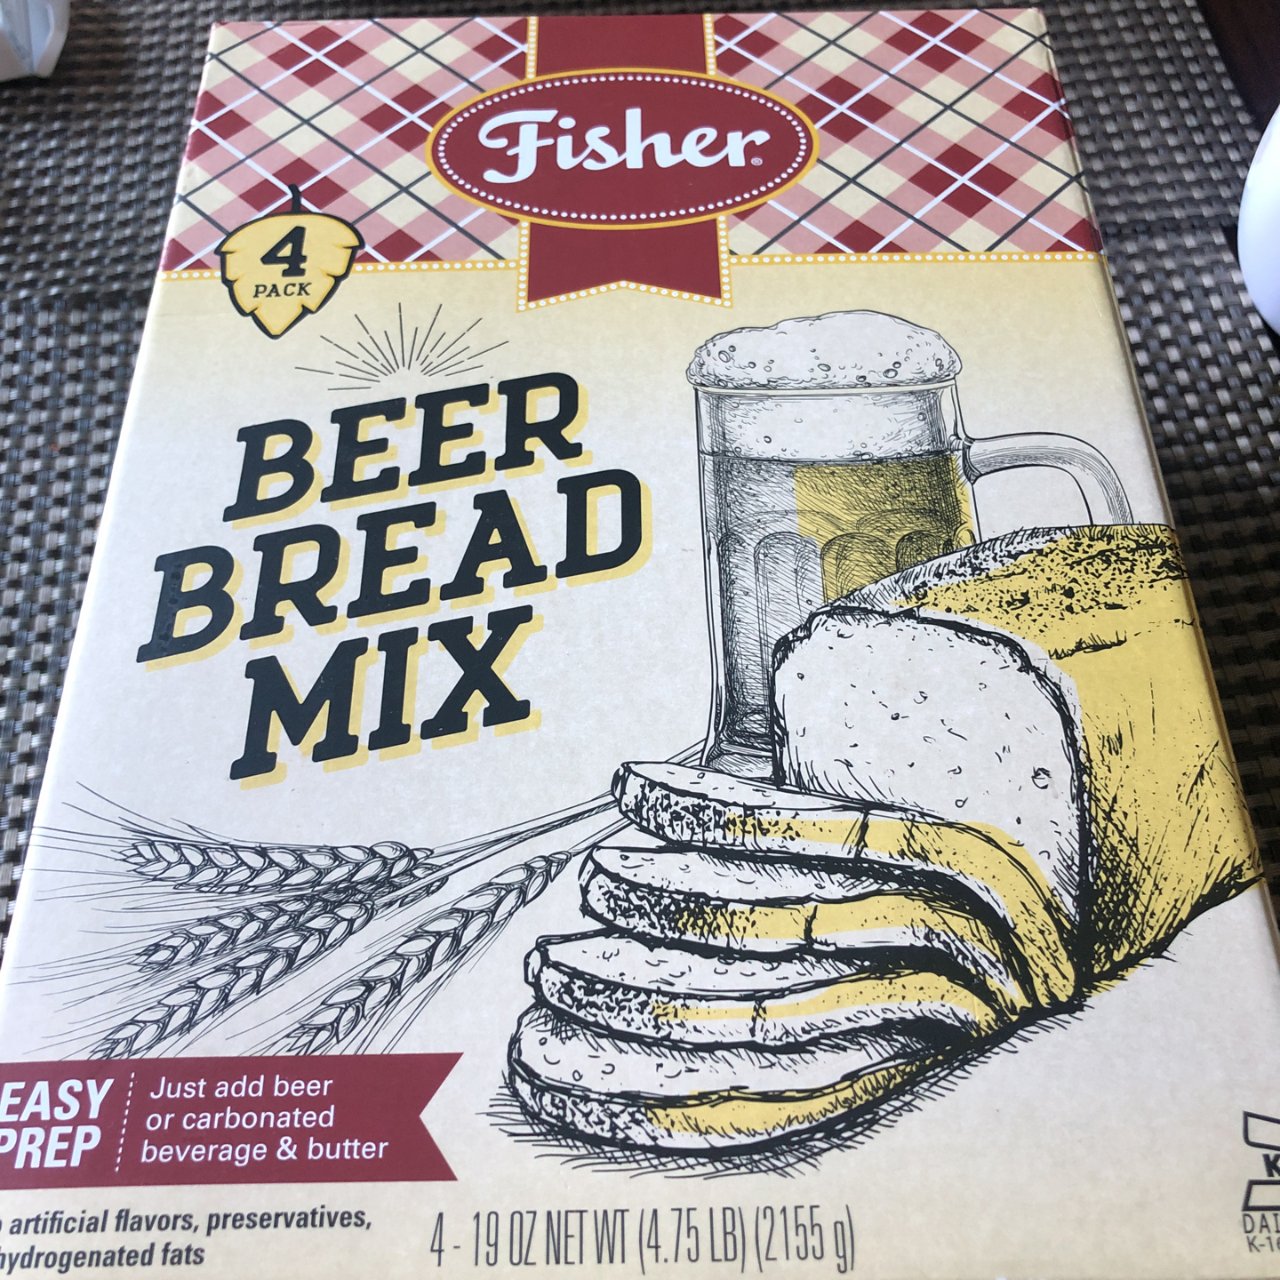 Beer bread